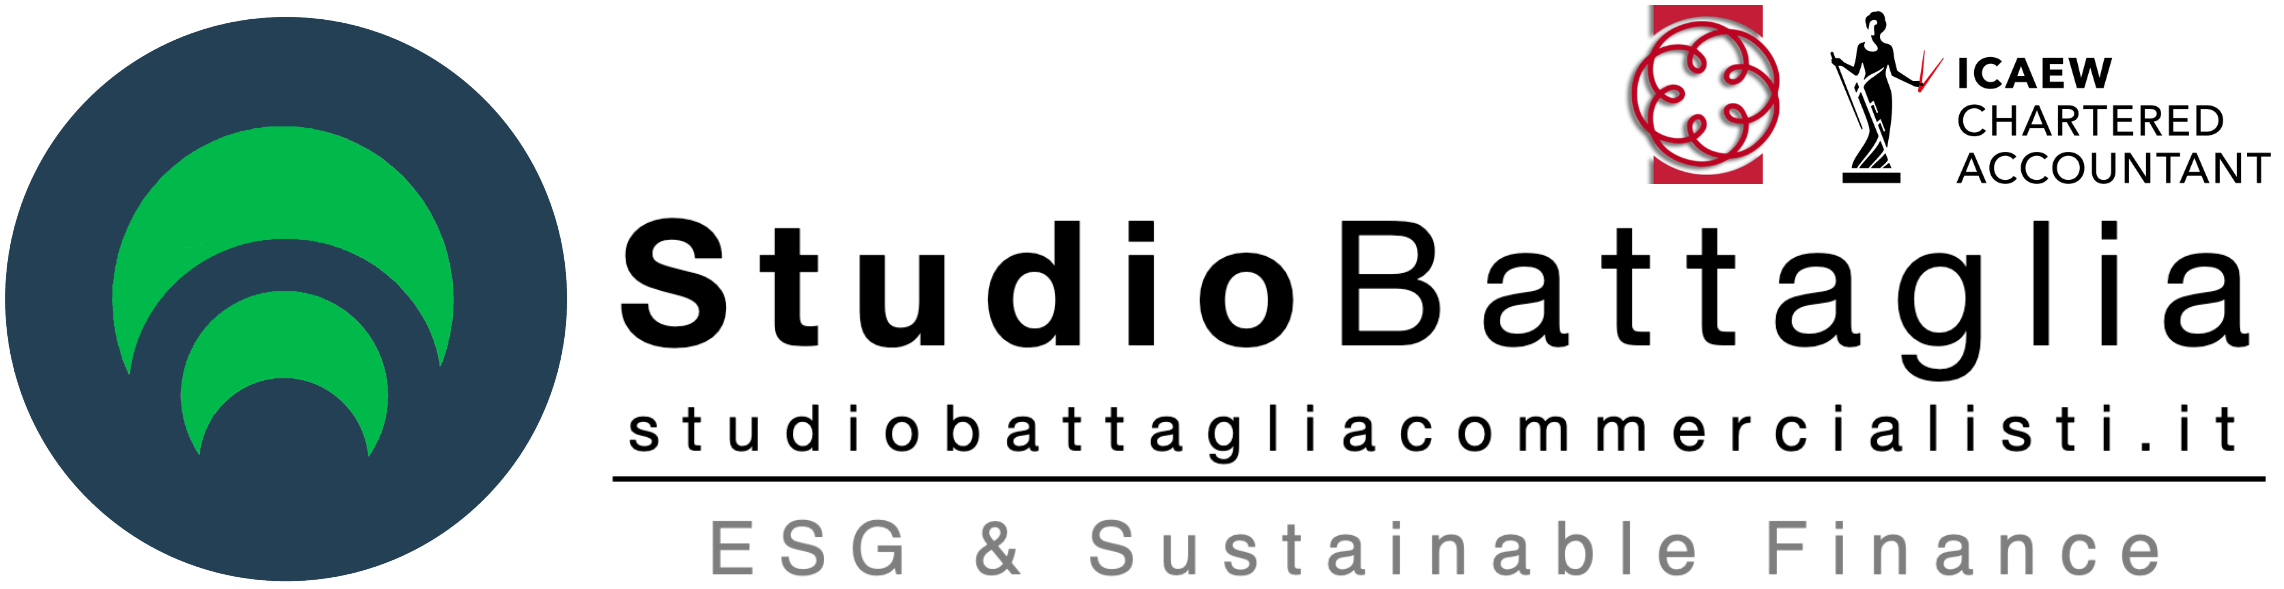 Studio Battaglia Commercialisti | CPMI